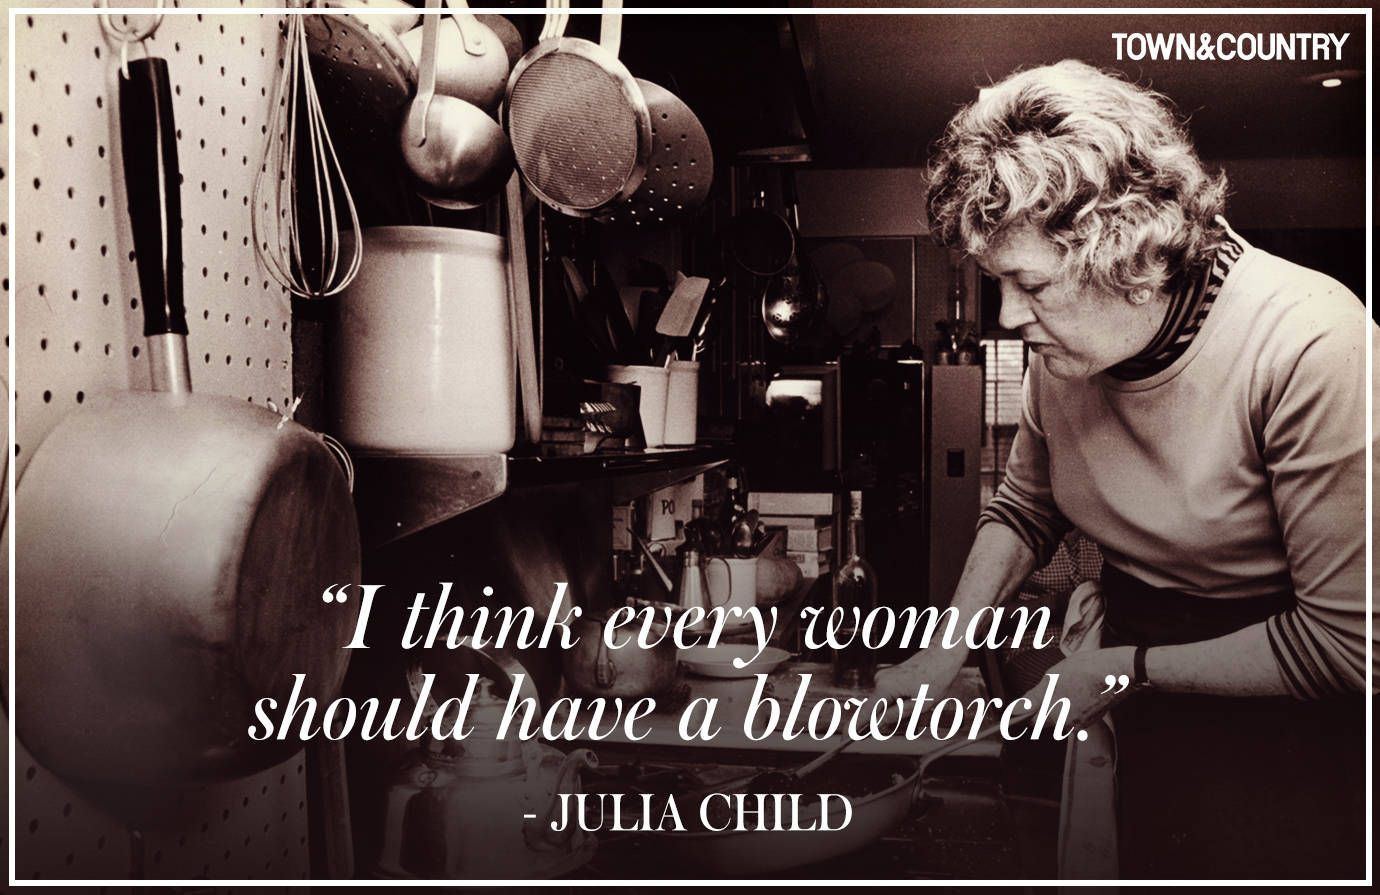 julia child quotes